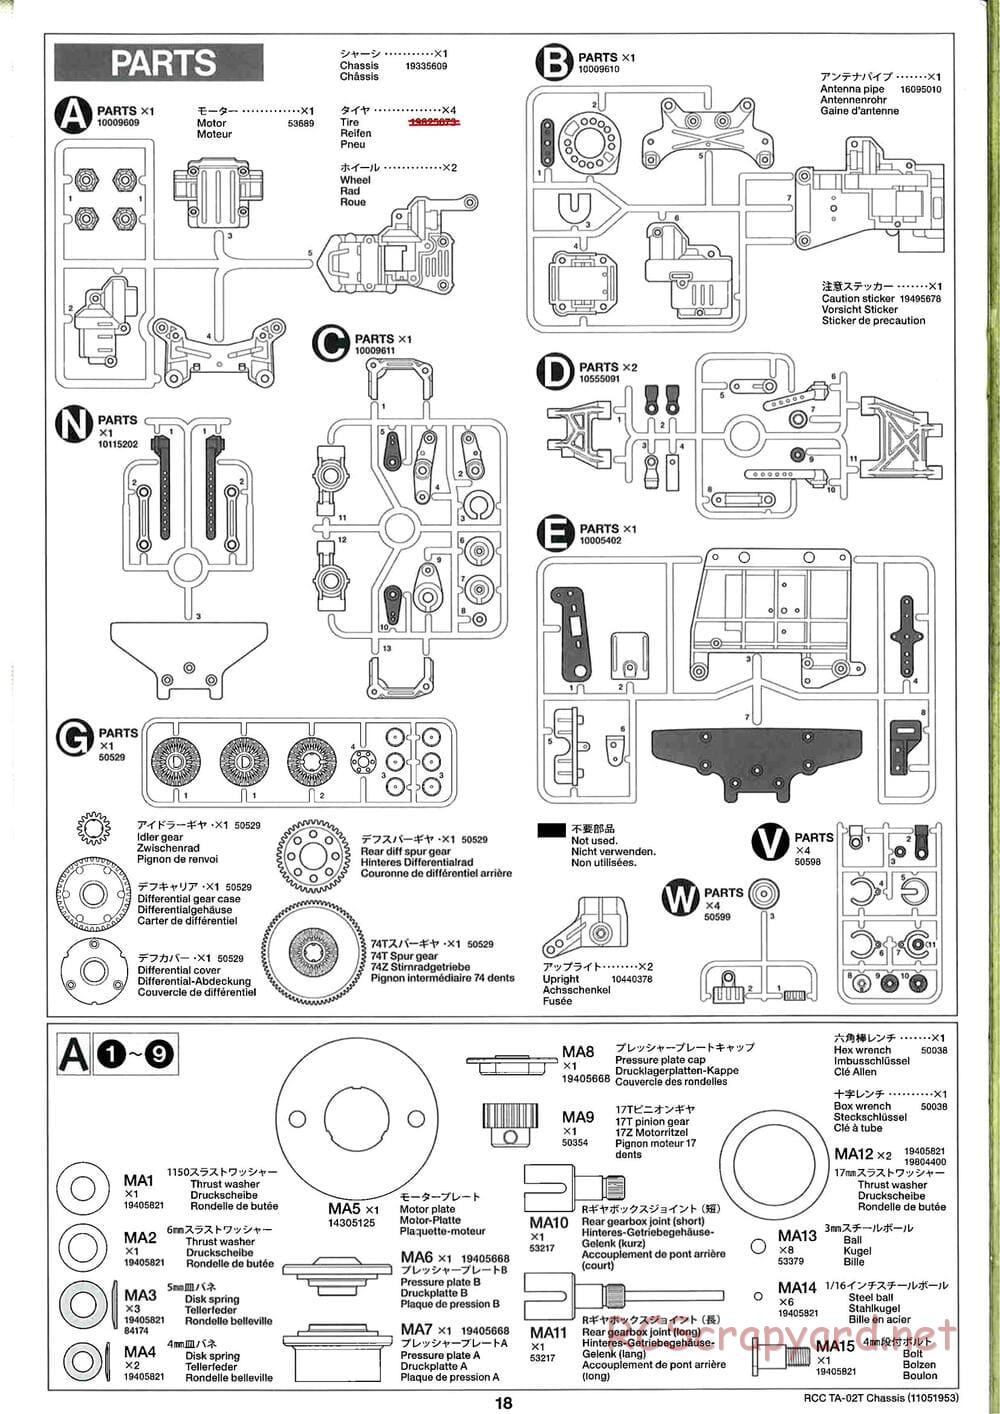 Tamiya - TA-02T Chassis - Manual - Page 18